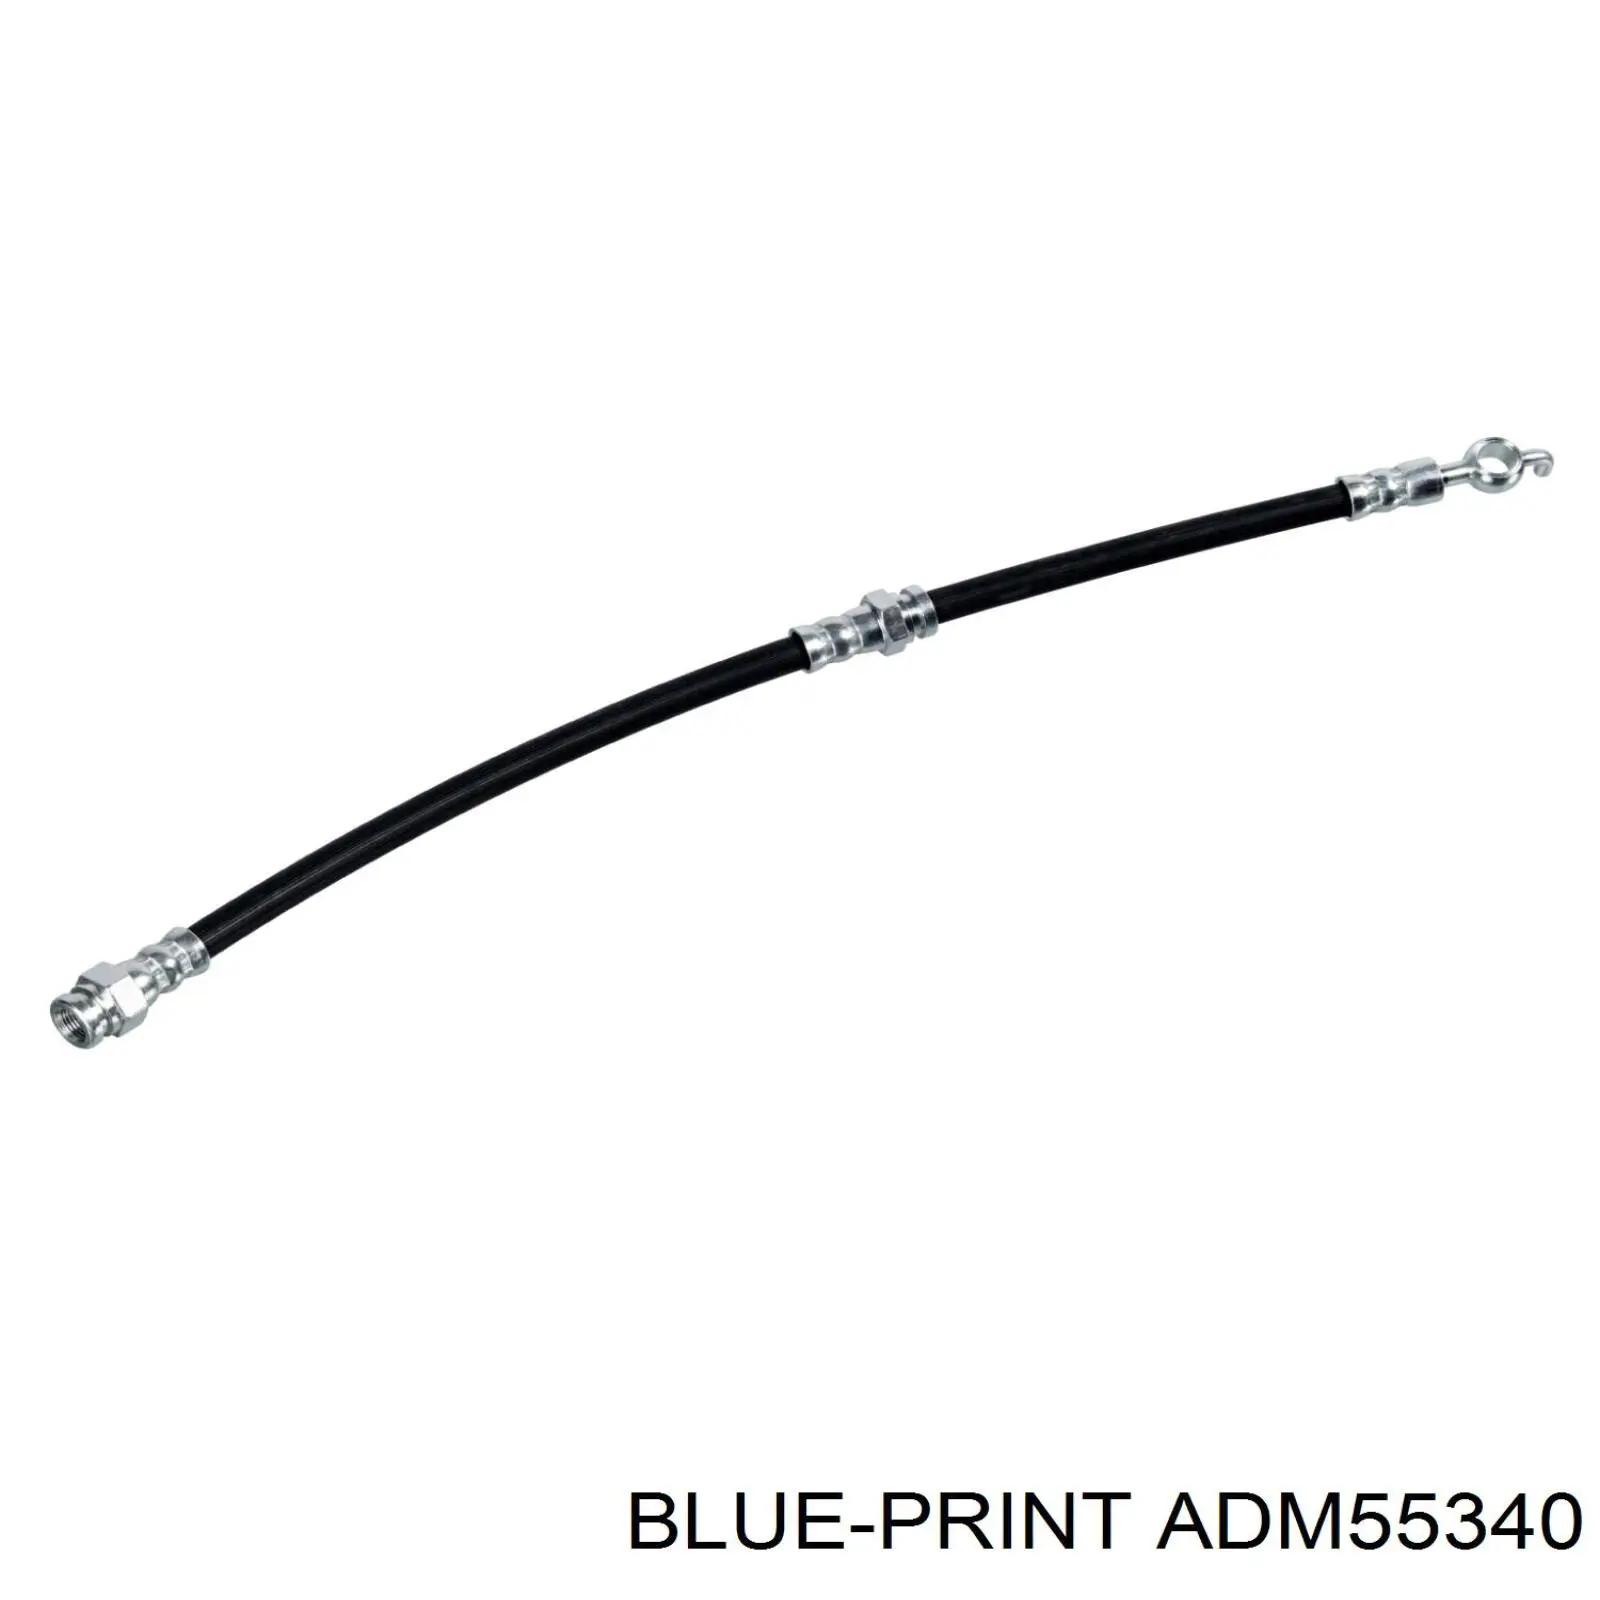 ADM55340 Blue Print latiguillo de freno delantero